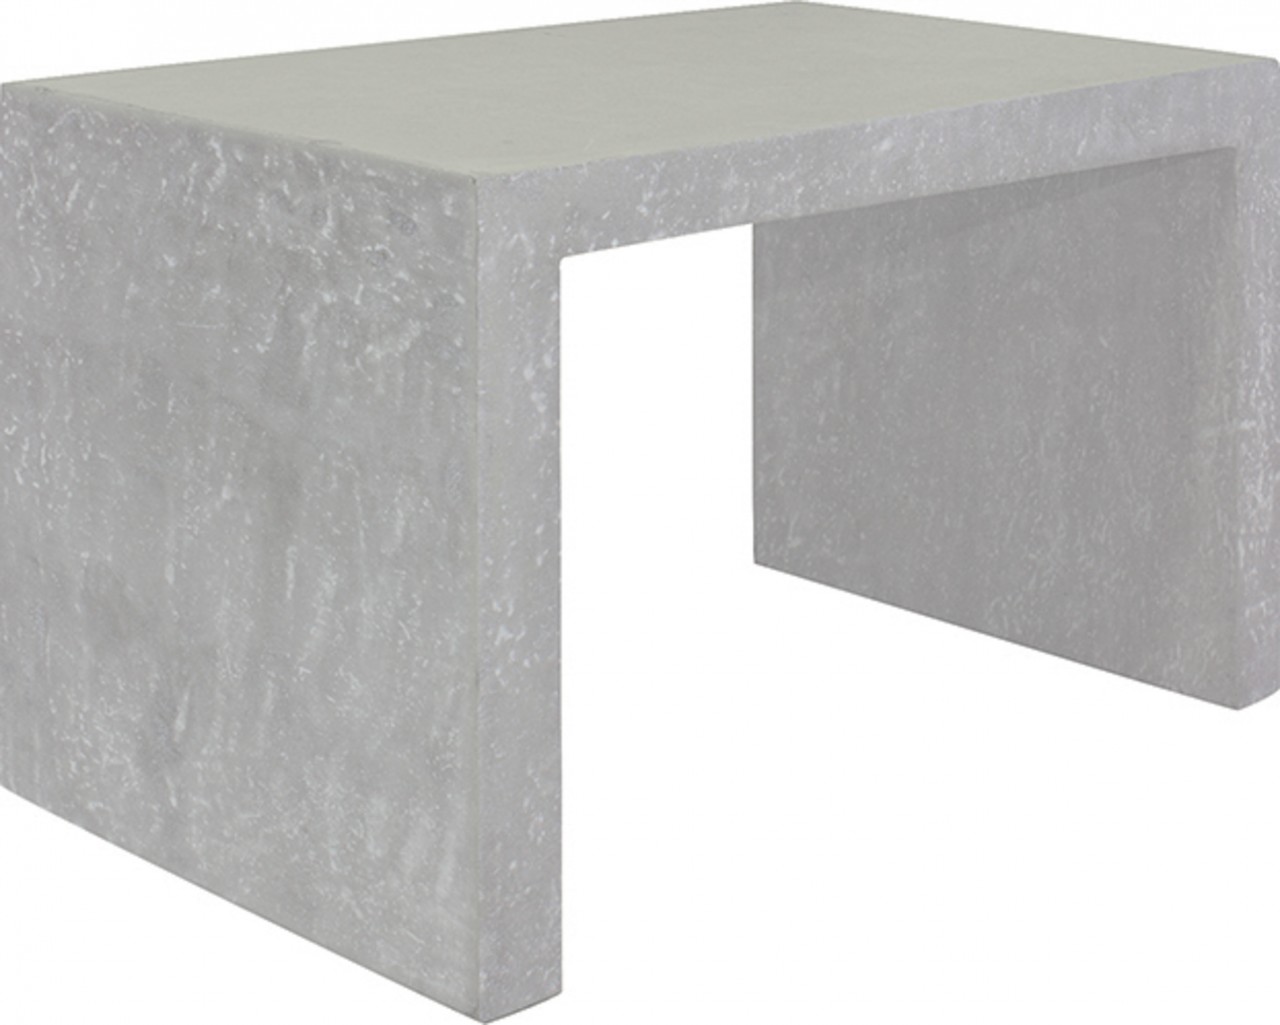 DIVISION Konsole, 81x50/50 cm, natur-beton